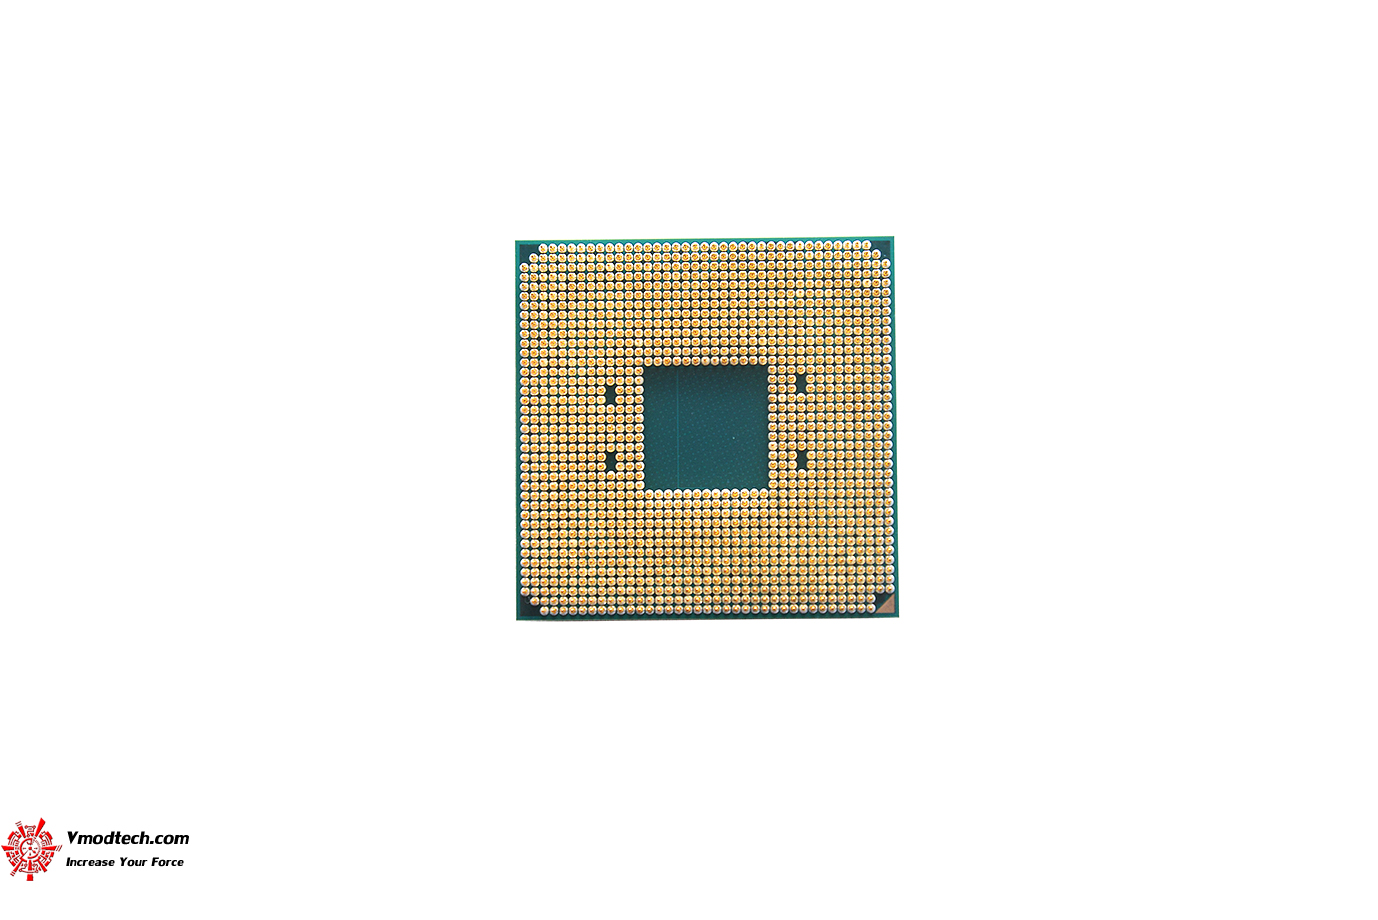 dsc 7822 AMD RYZEN 3 3100 PROCESSOR REVIEW